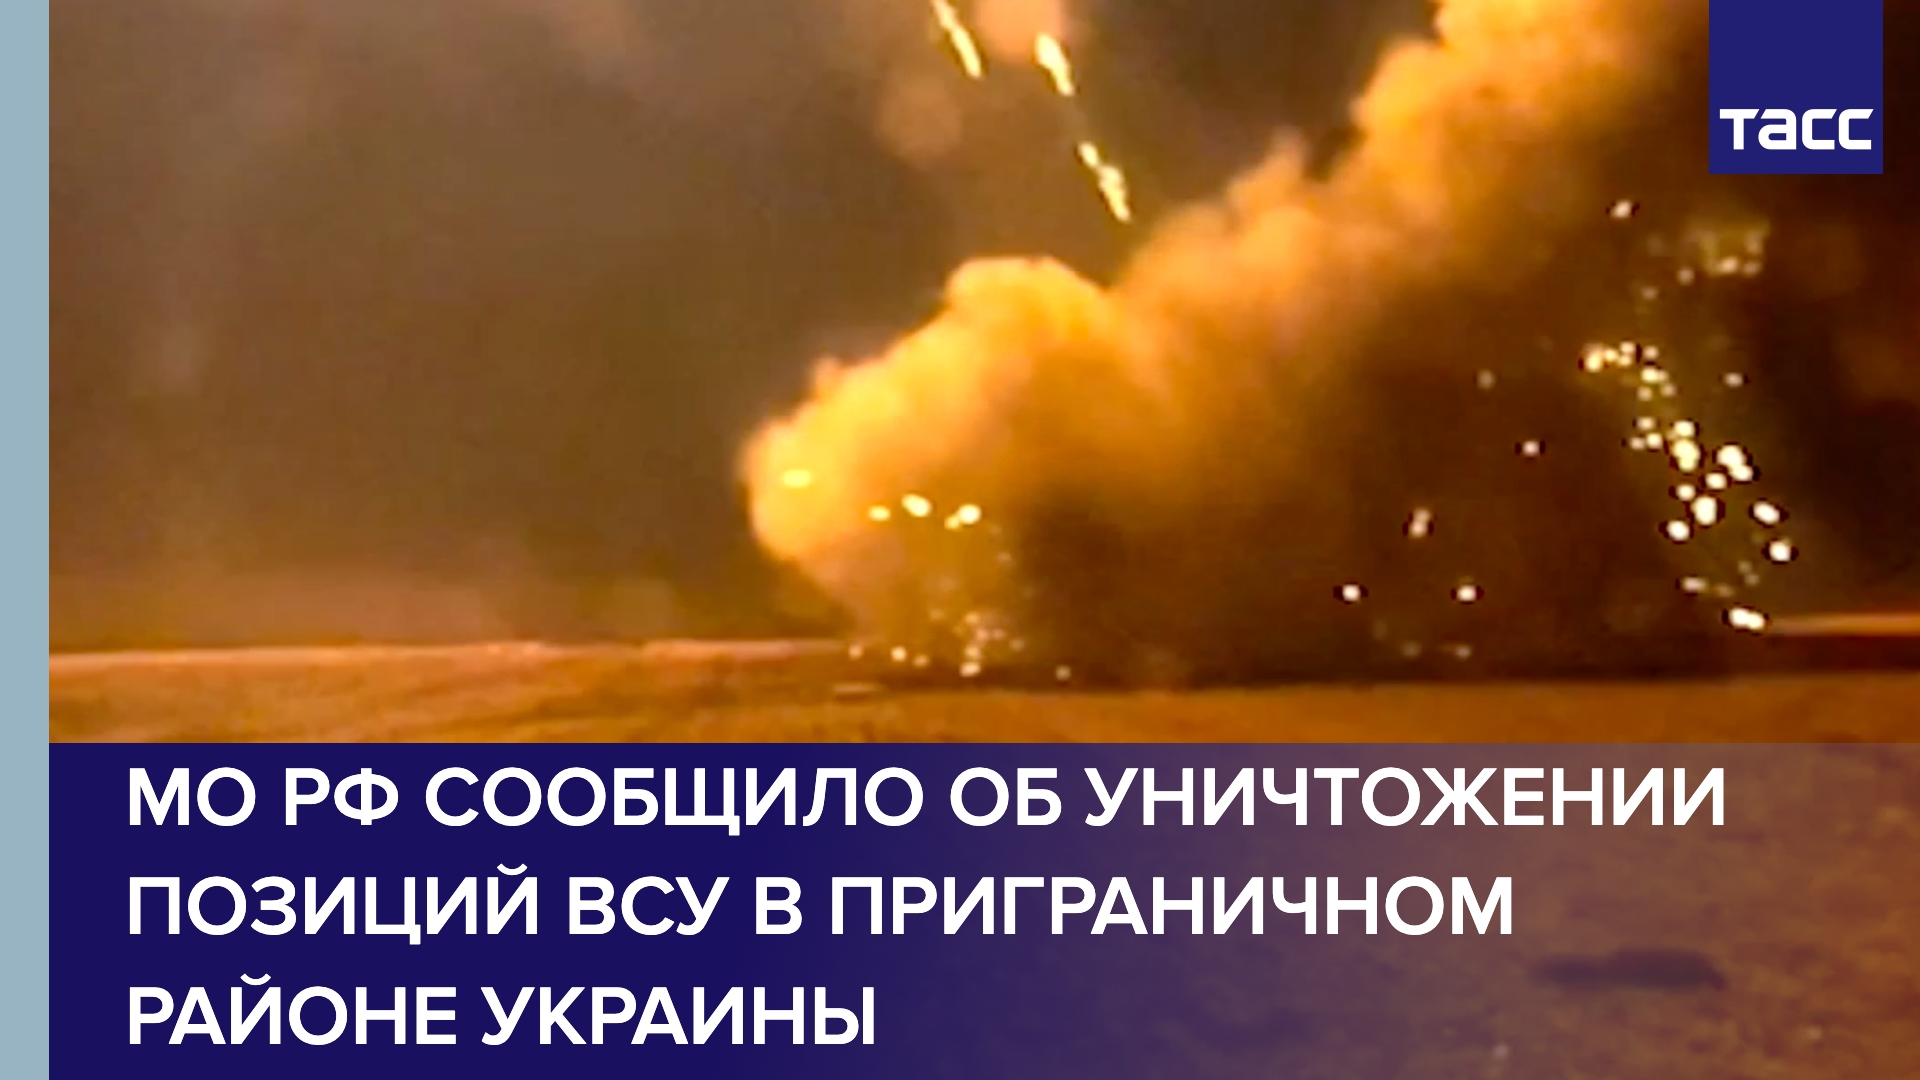 МО РФ сообщило об уничтожении позиций ВСУ в приграничном районе Украины